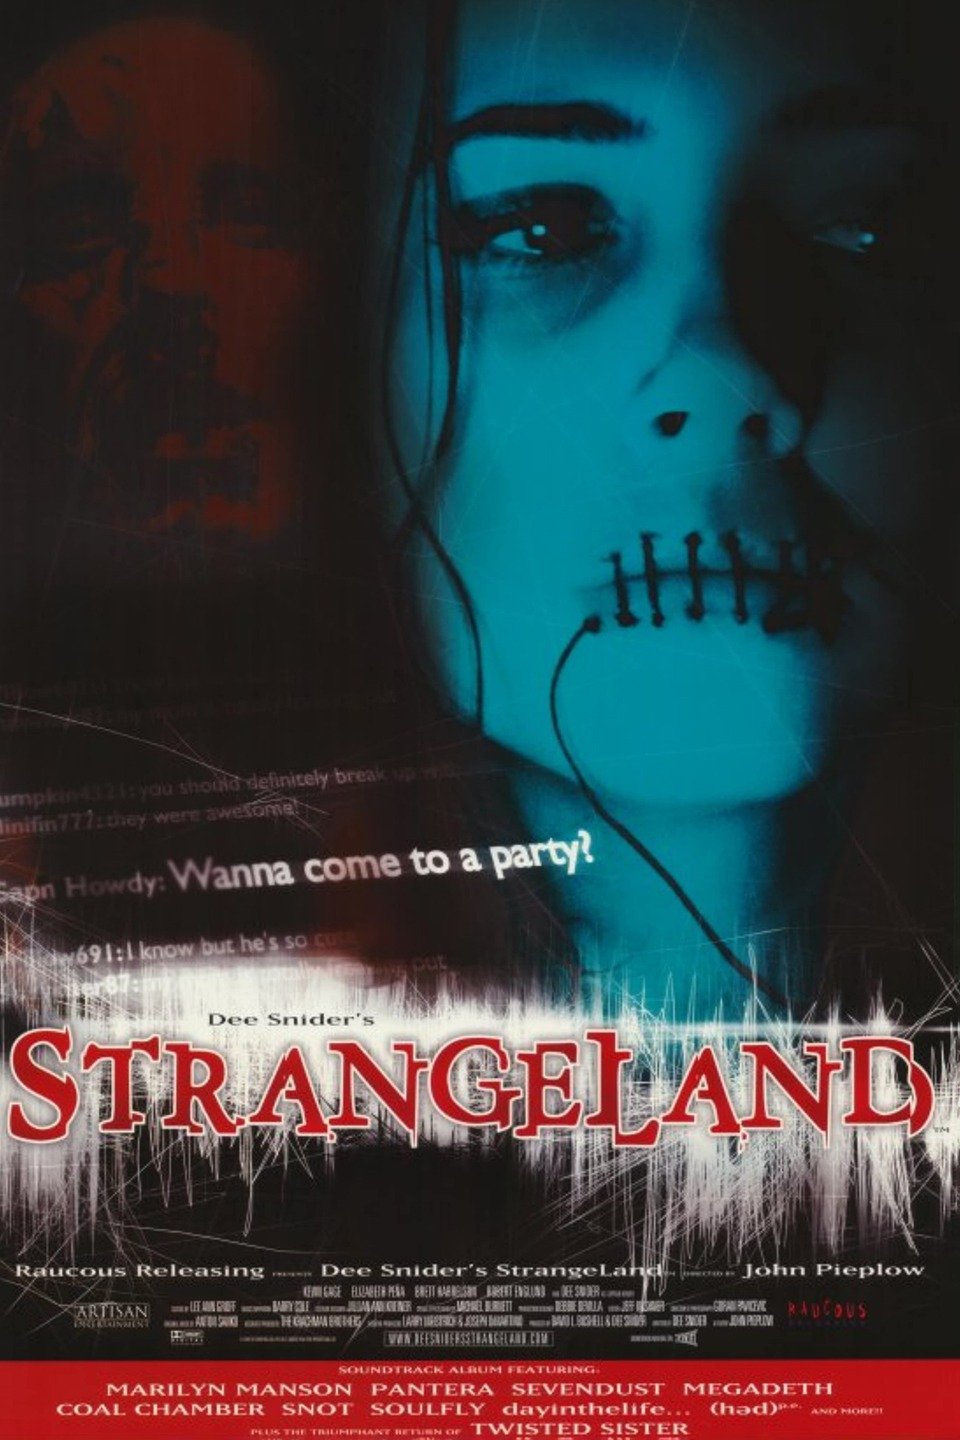 strangeland movie free